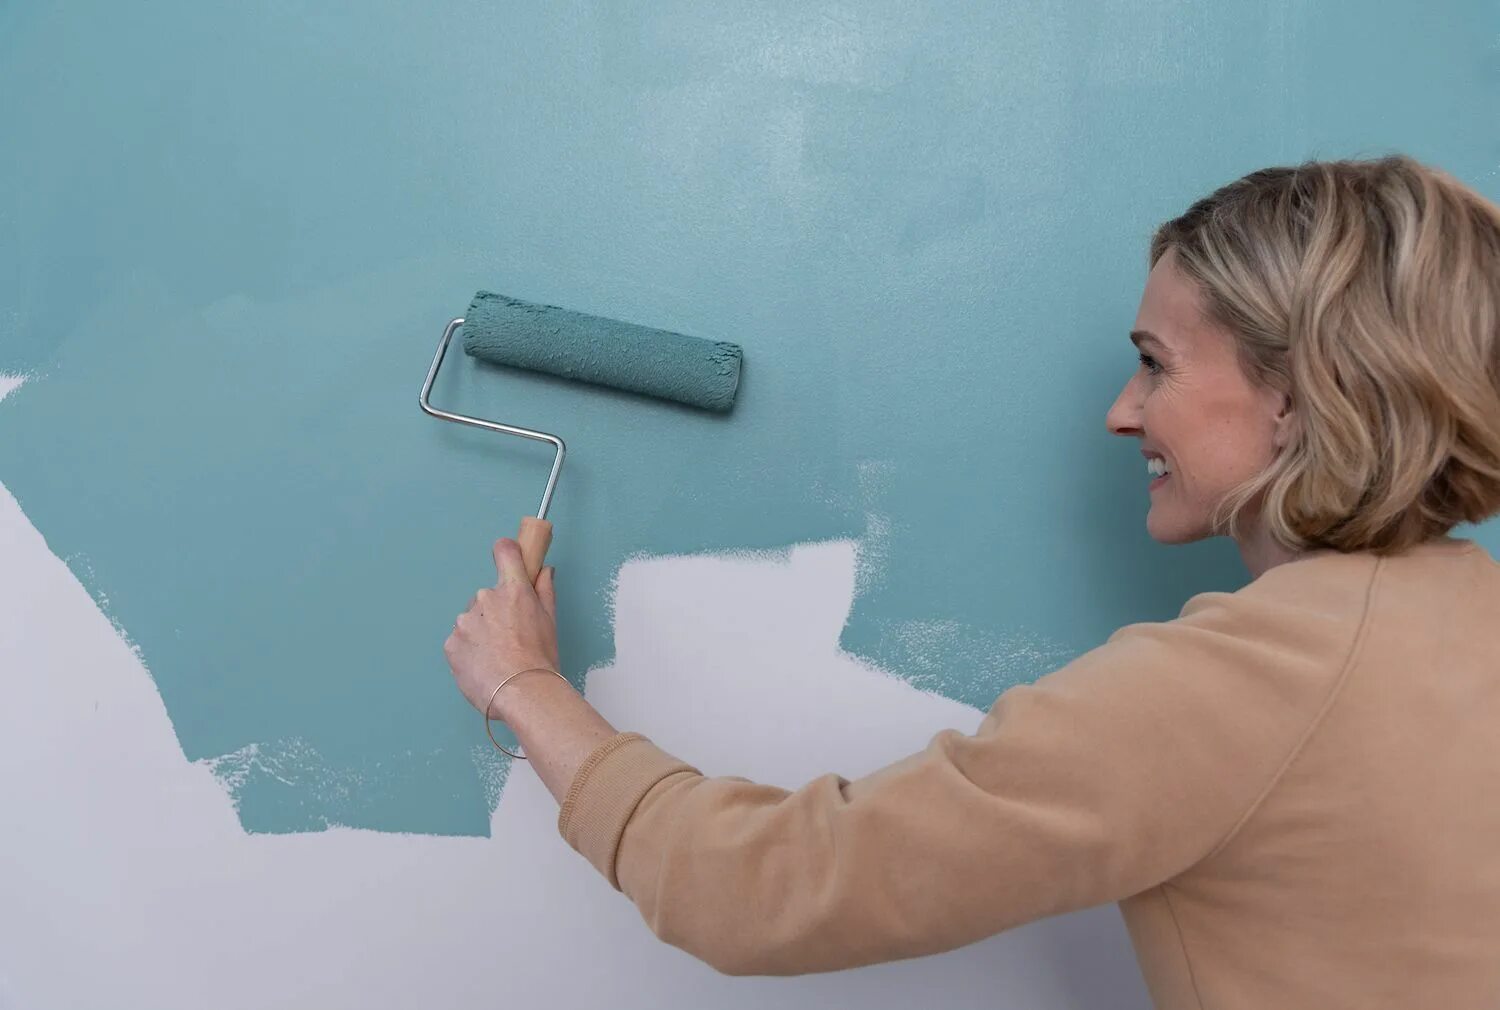 Красить валиком стены без следов. Покрашенные стены. Водоэмульсионная краска для стен. Валик красит стену. Покраска водоэмульсионной краской.